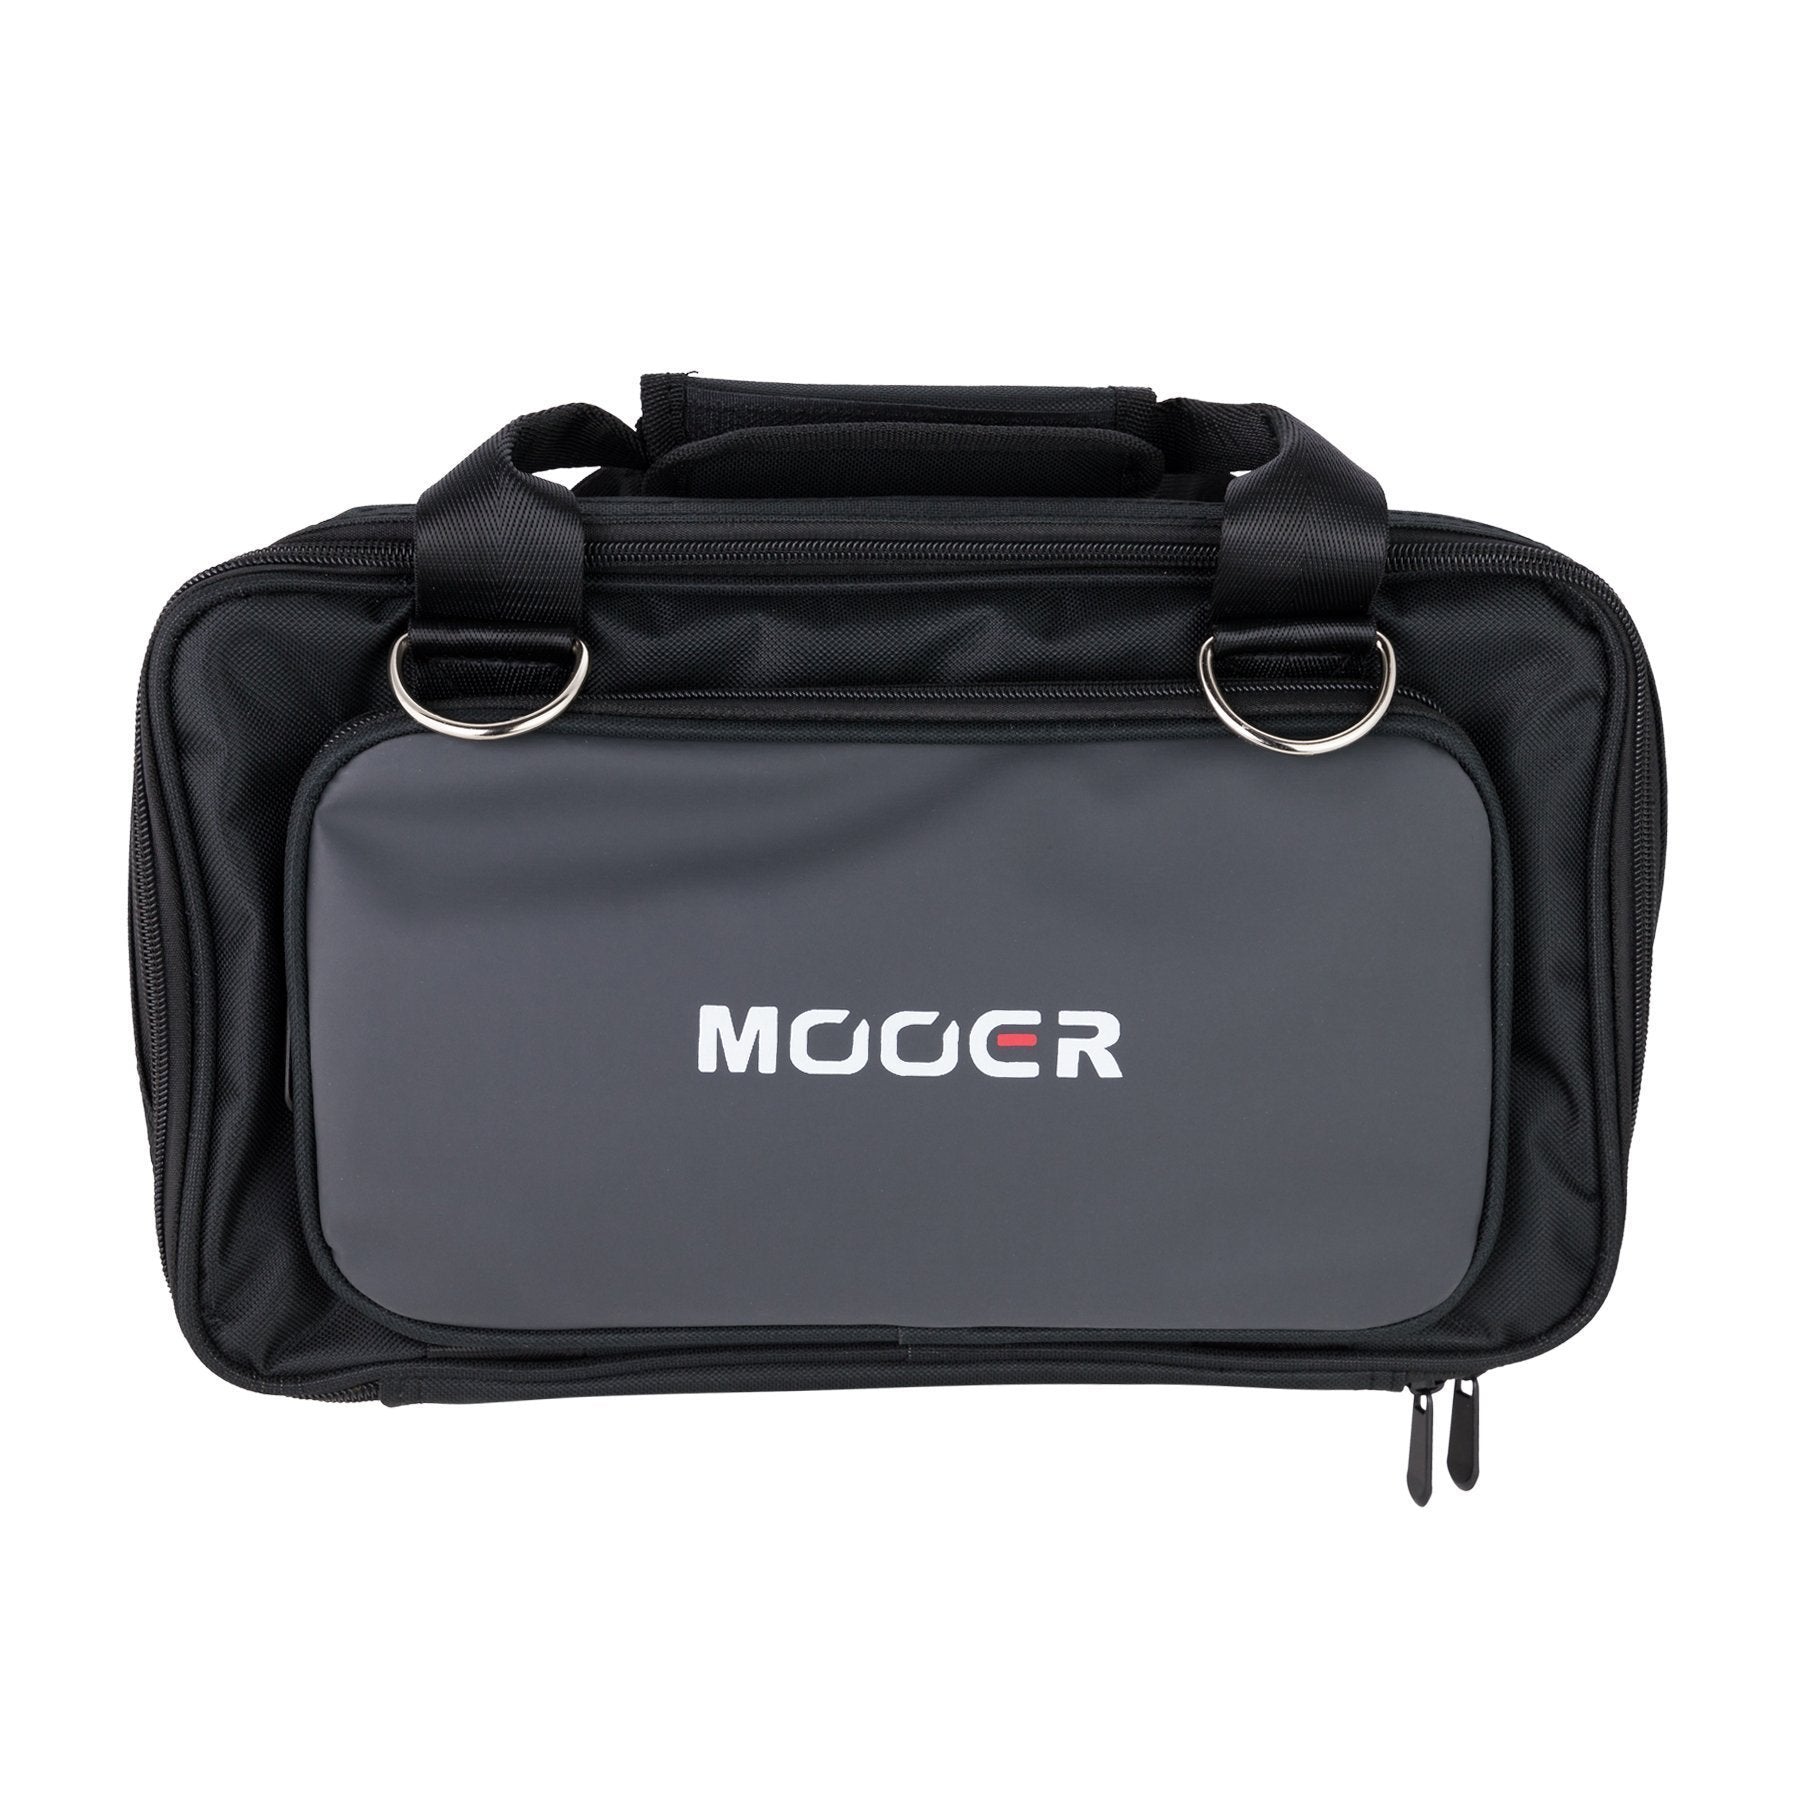 Mooer GE-200 Padded Soft Carry Bag-MEP-SC200